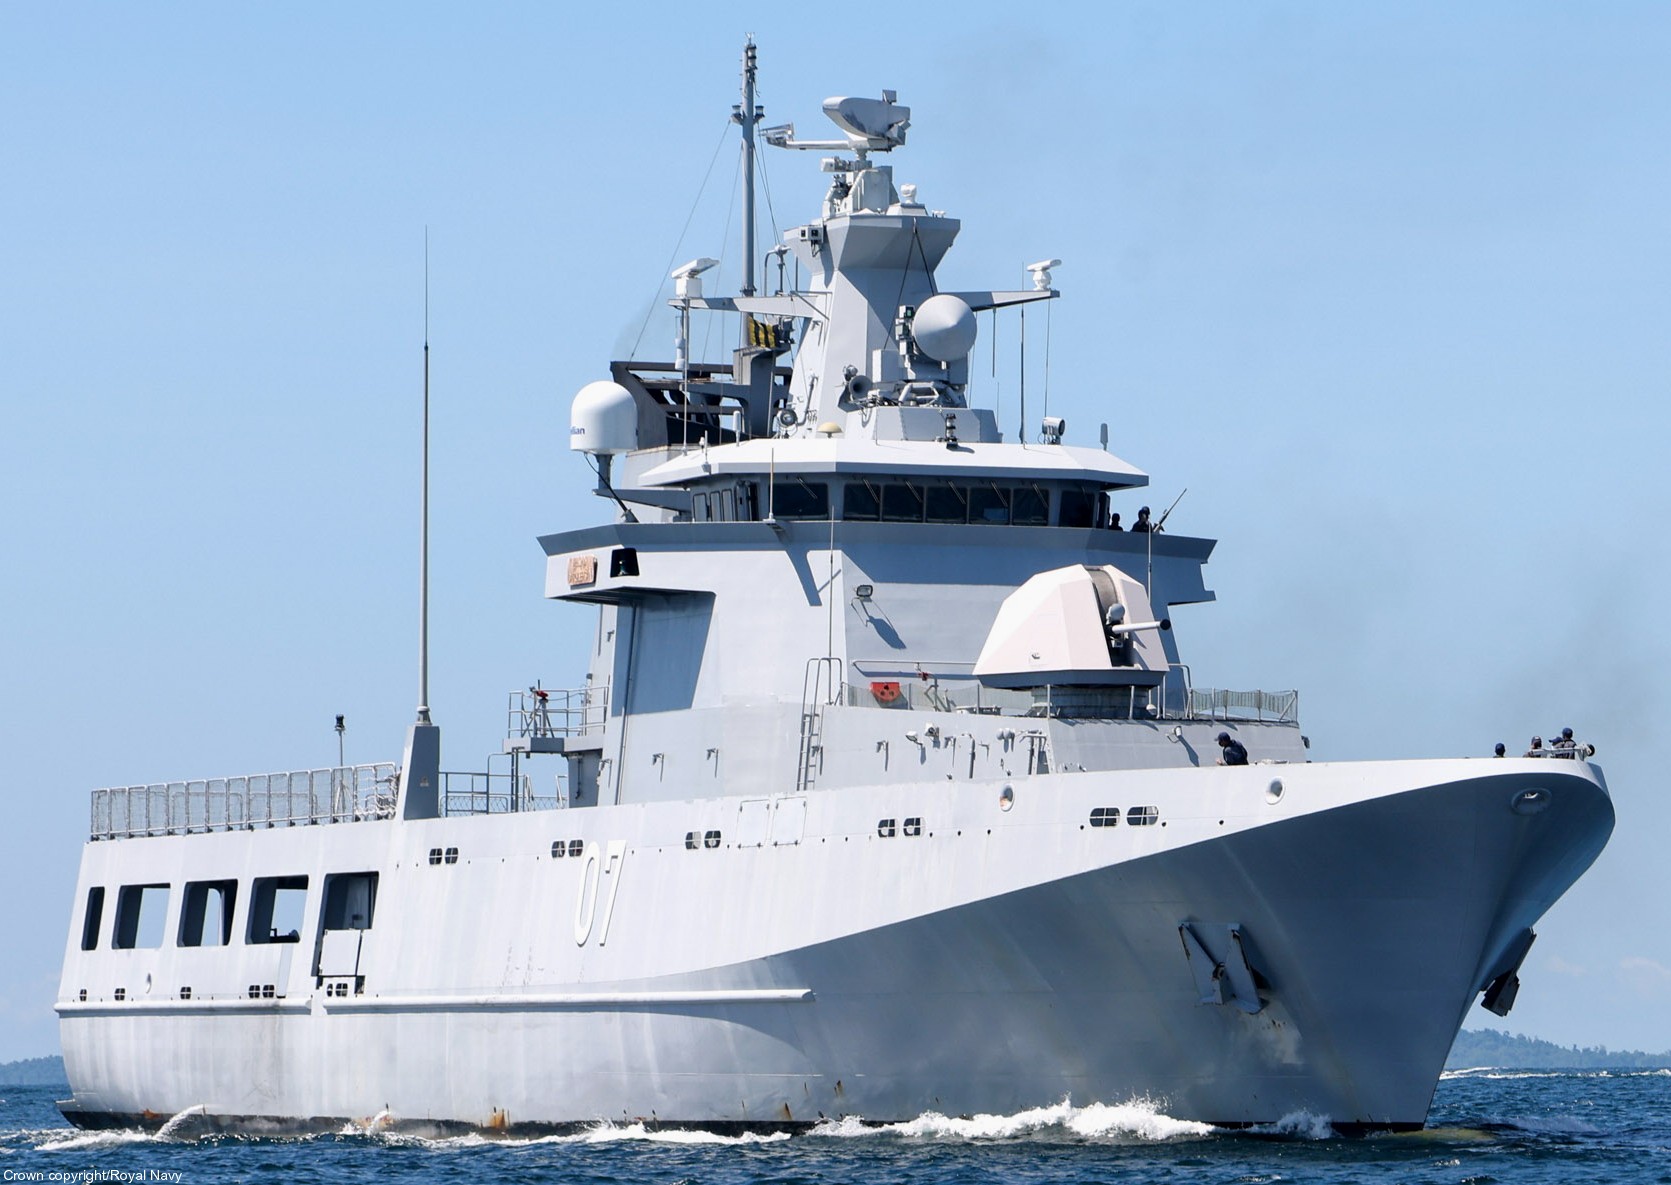 opv 07 kdb darulehsan offshore patrol vessel darussalem class royal brunei navy 03